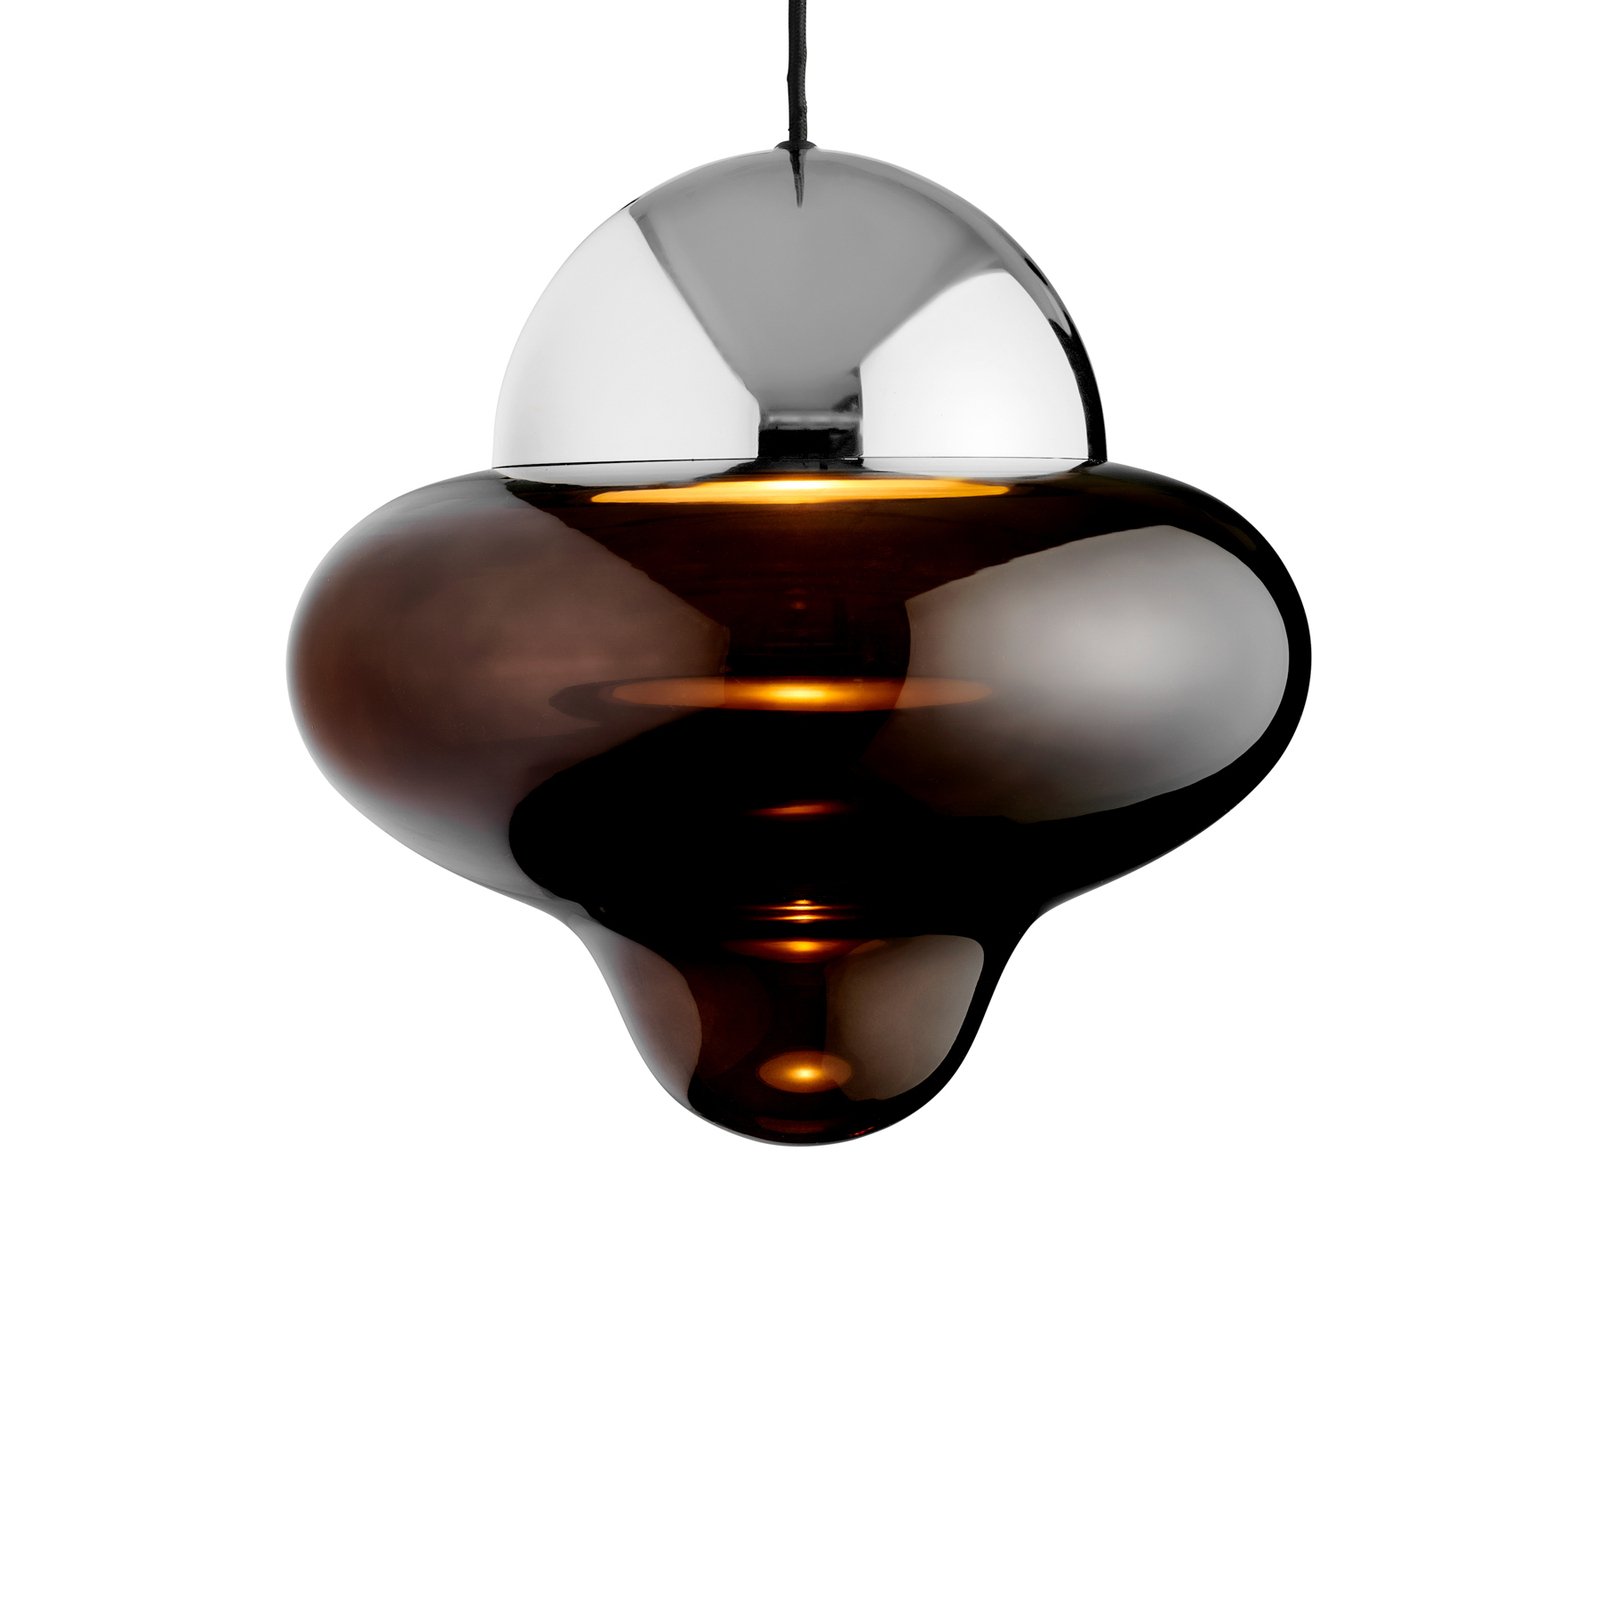 LED-riippuvalaisin Nutty XL, ruskea / krominvärinen, Ø 30 cm